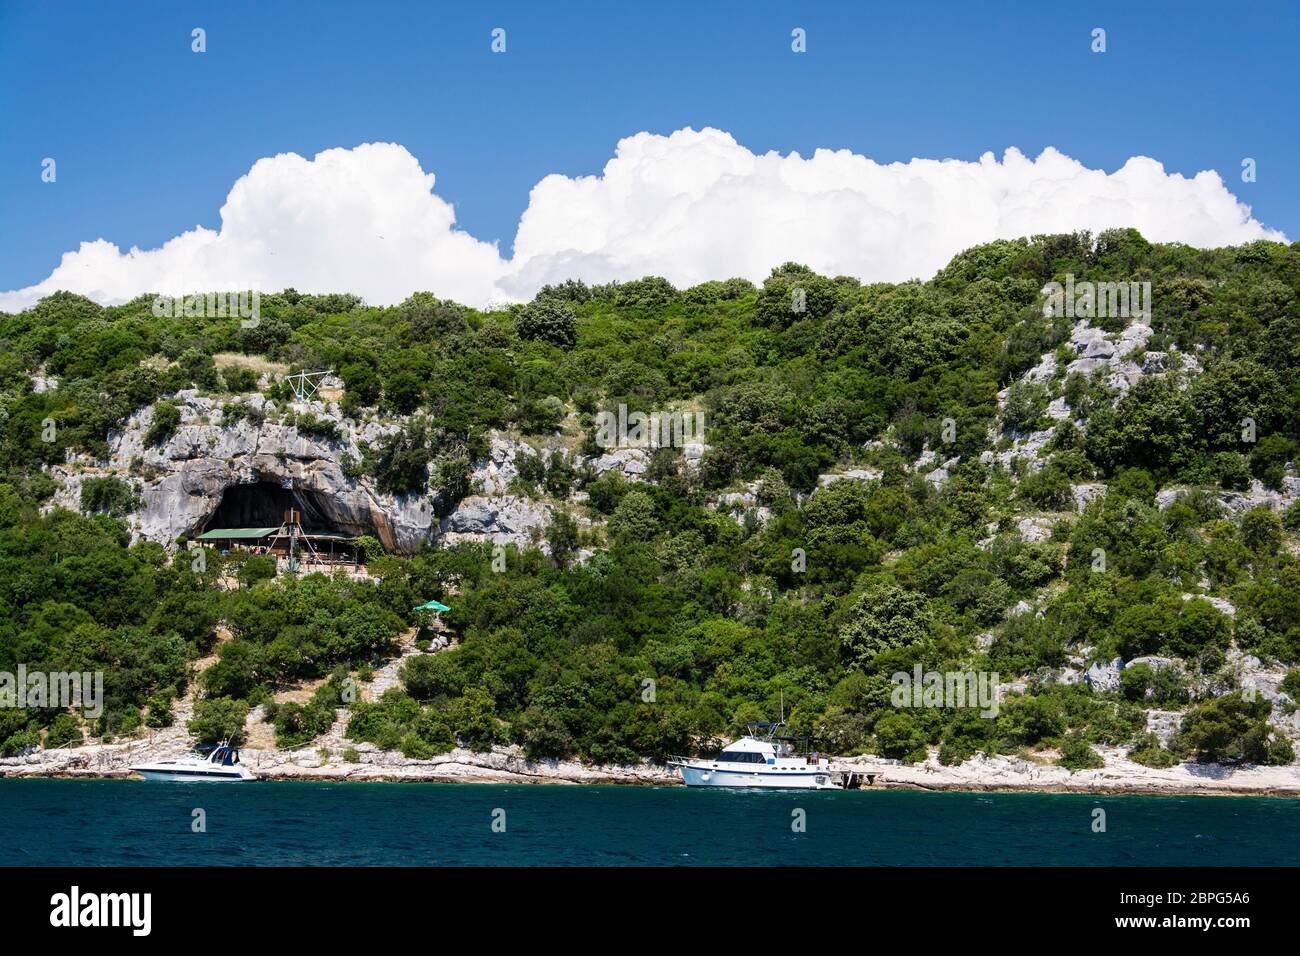 La Baia di Lim e la valle è una peculiare caratteristica geografica sulla costa occidentale dell' Istria, Croazia. Foto Stock